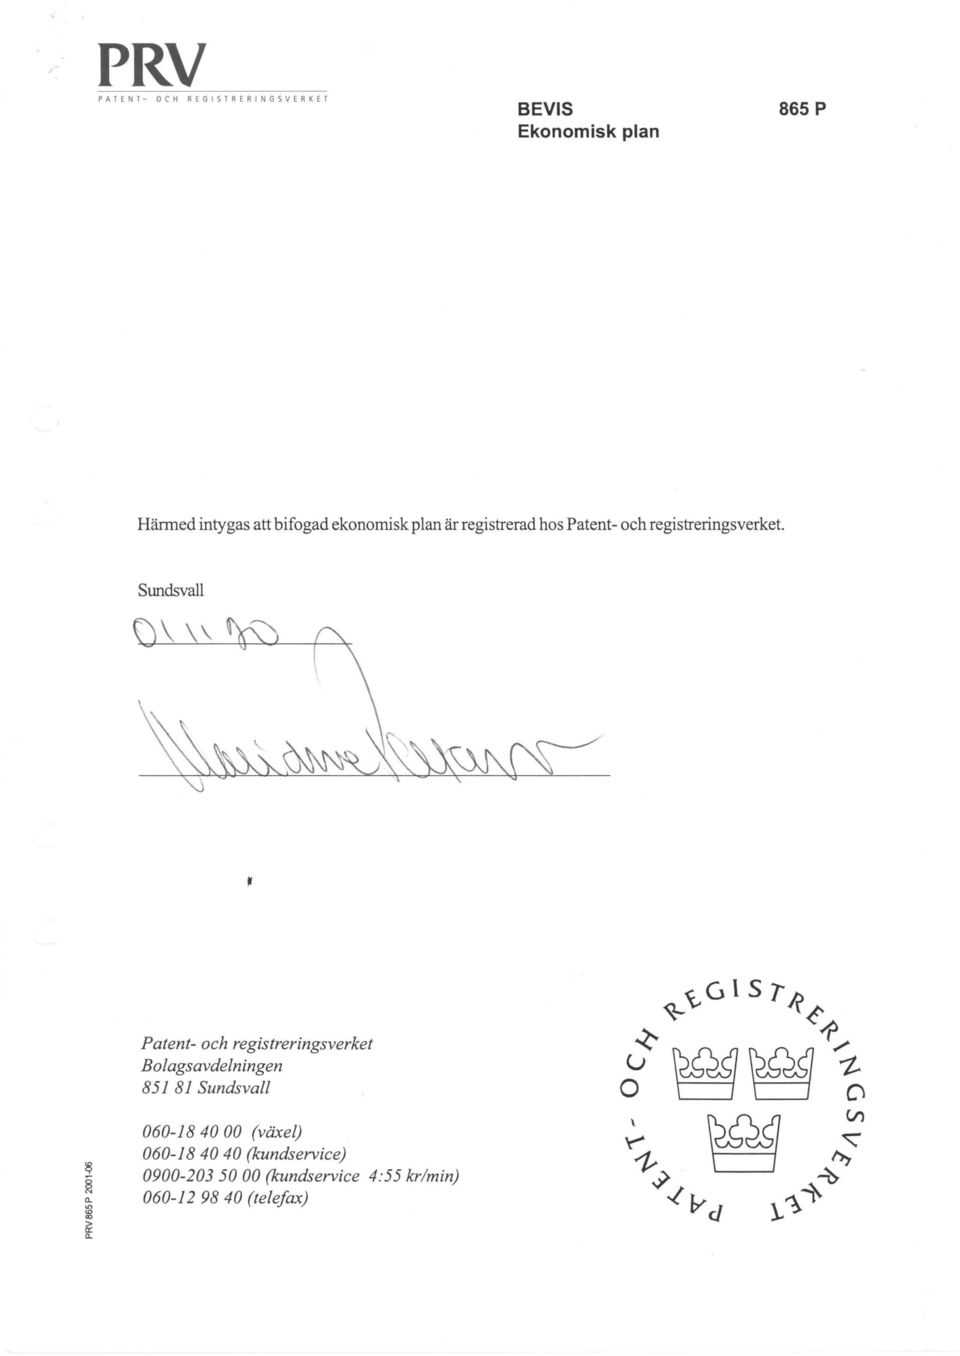 Stmdsvall Patent- och registreringsverket Bolagsavdelningen 851 81 Sundsvall 060-18 40